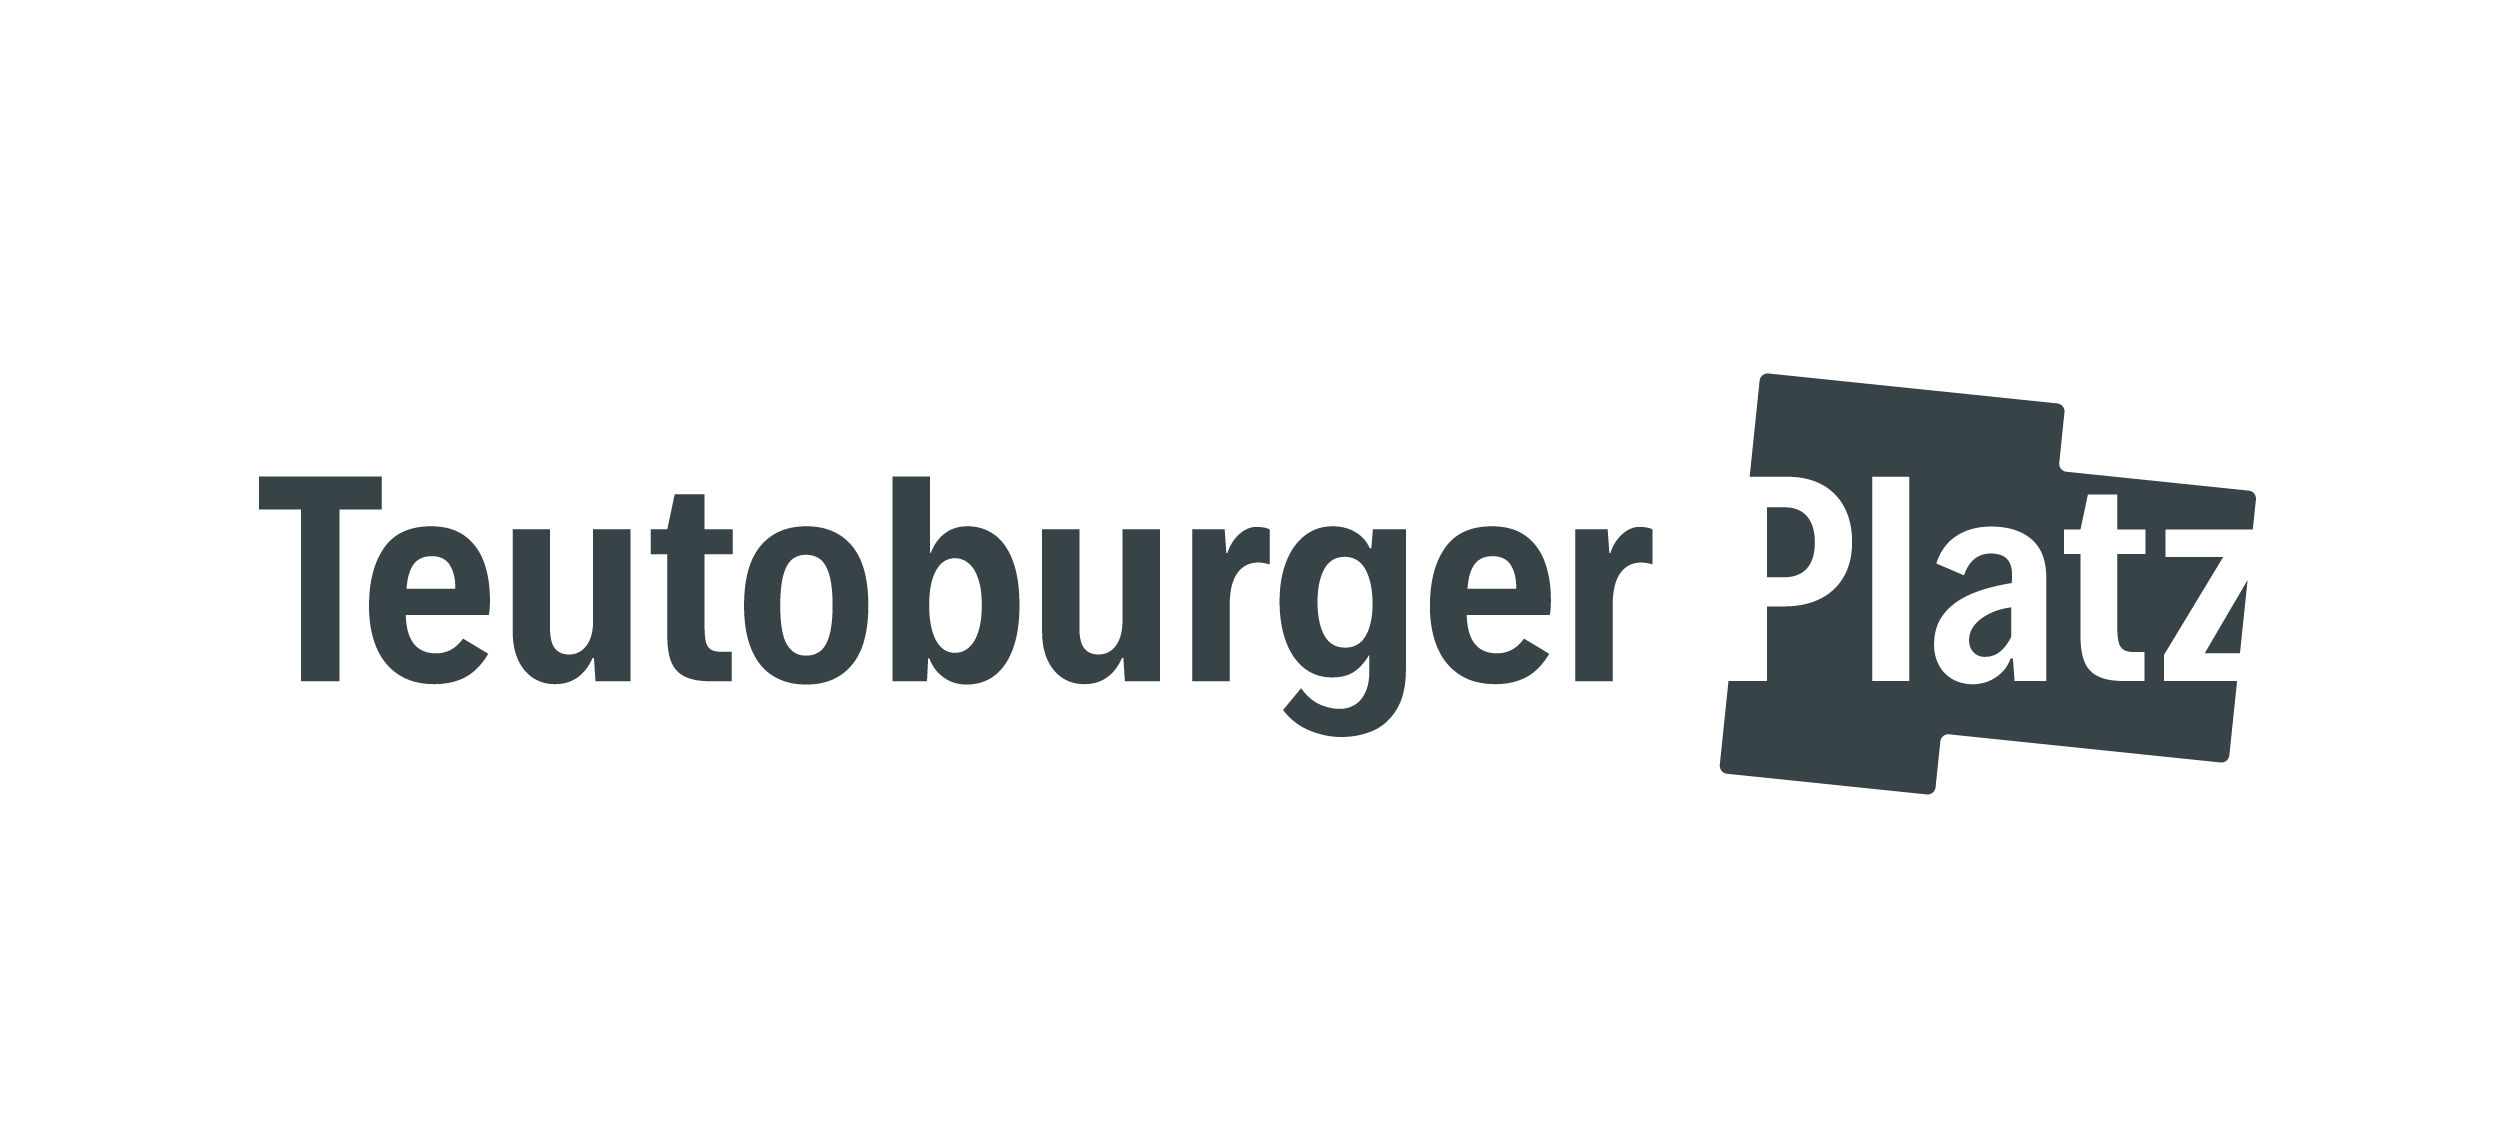 Logo Teutoburger Platz